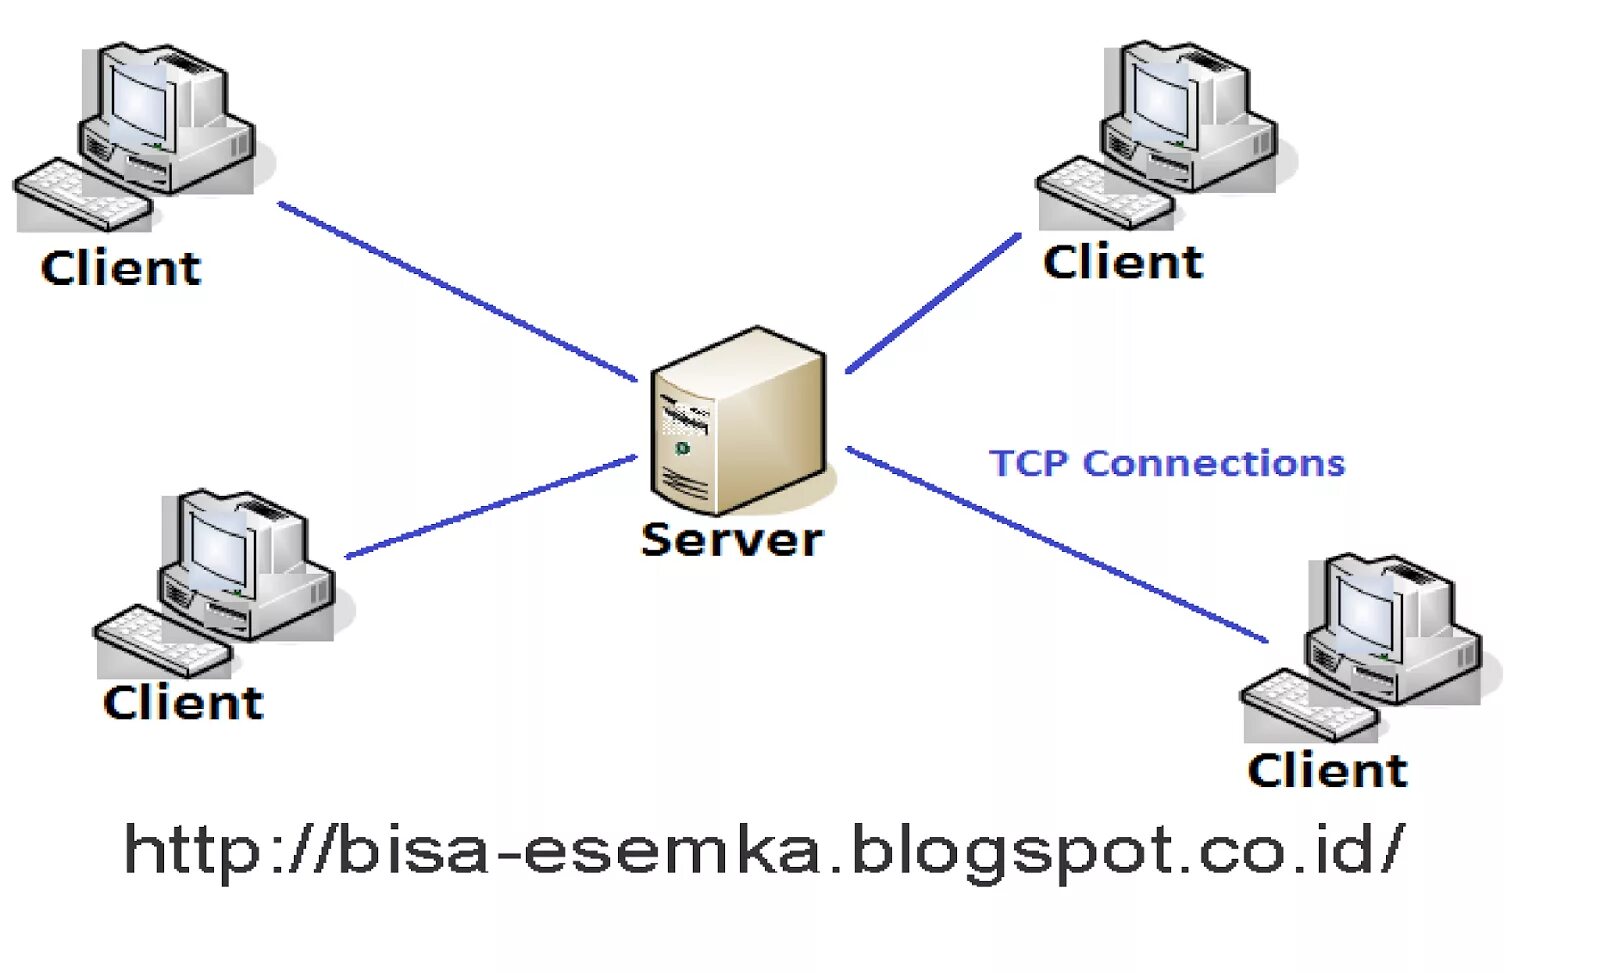 Модели архитектуры клиент-сервер. TCP архитектура клиент сервер. Схема клиент-серверной архитектуры. Технология клиент-сервер. Client 2 client